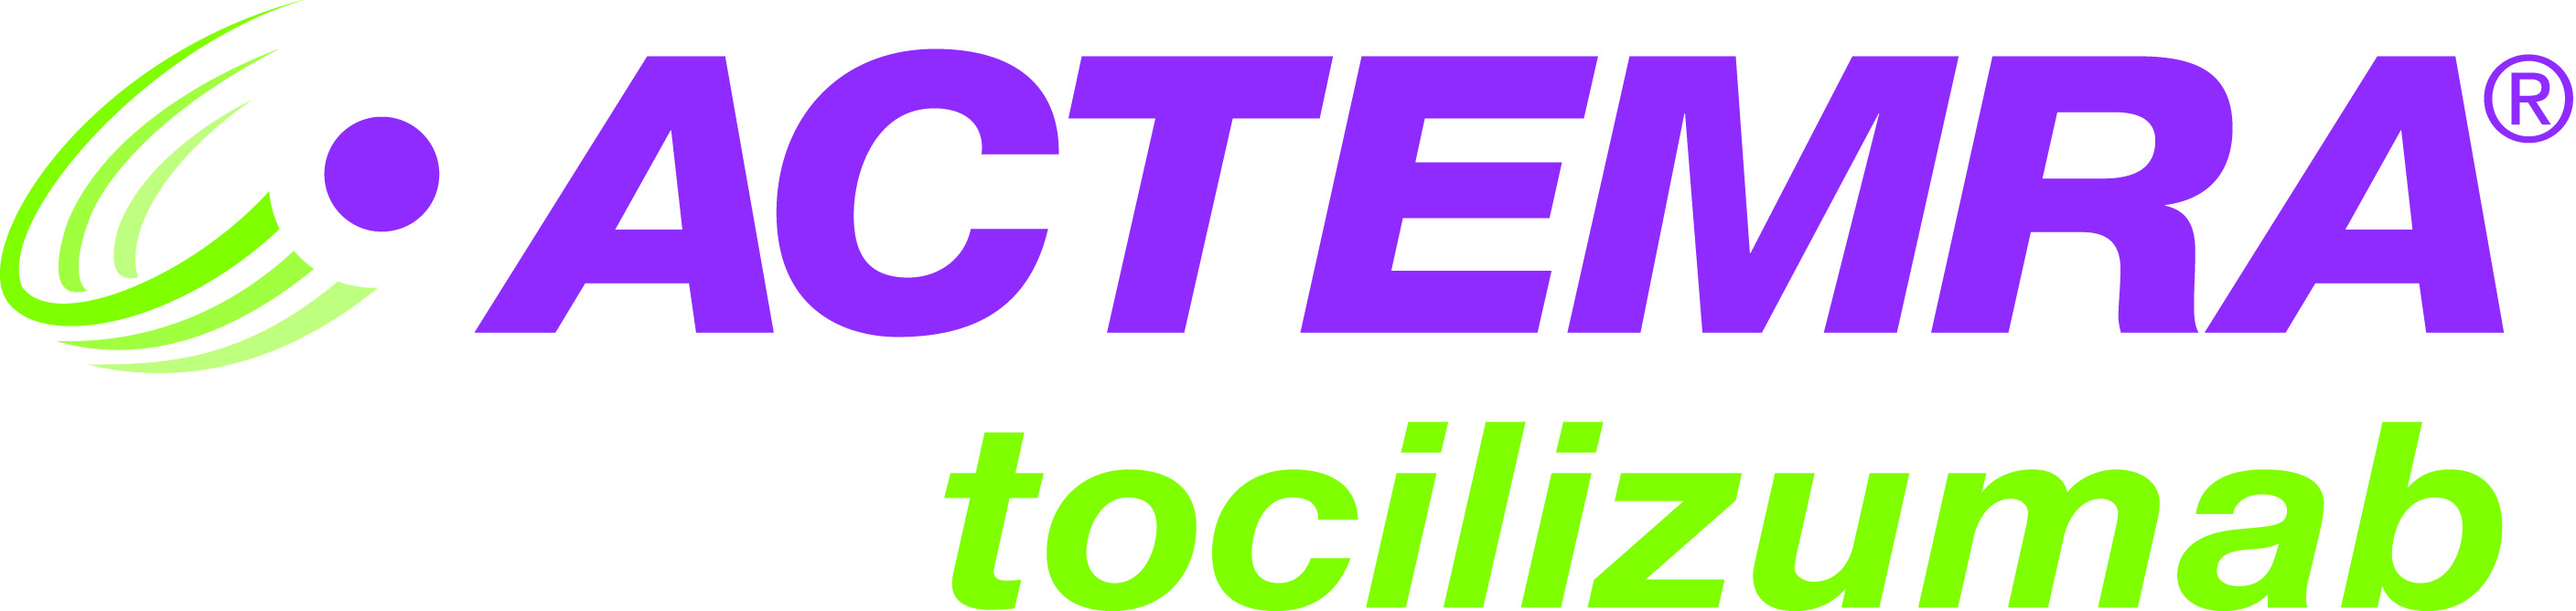 Image result for actemra logo